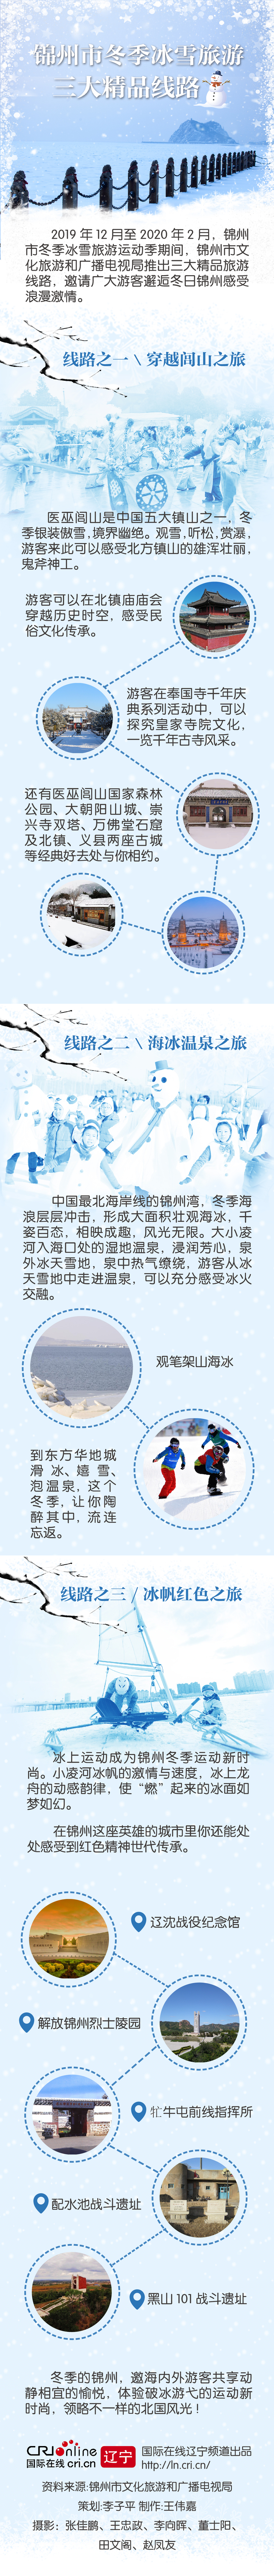 錦州市推出冬季冰雪旅遊三大精品線路